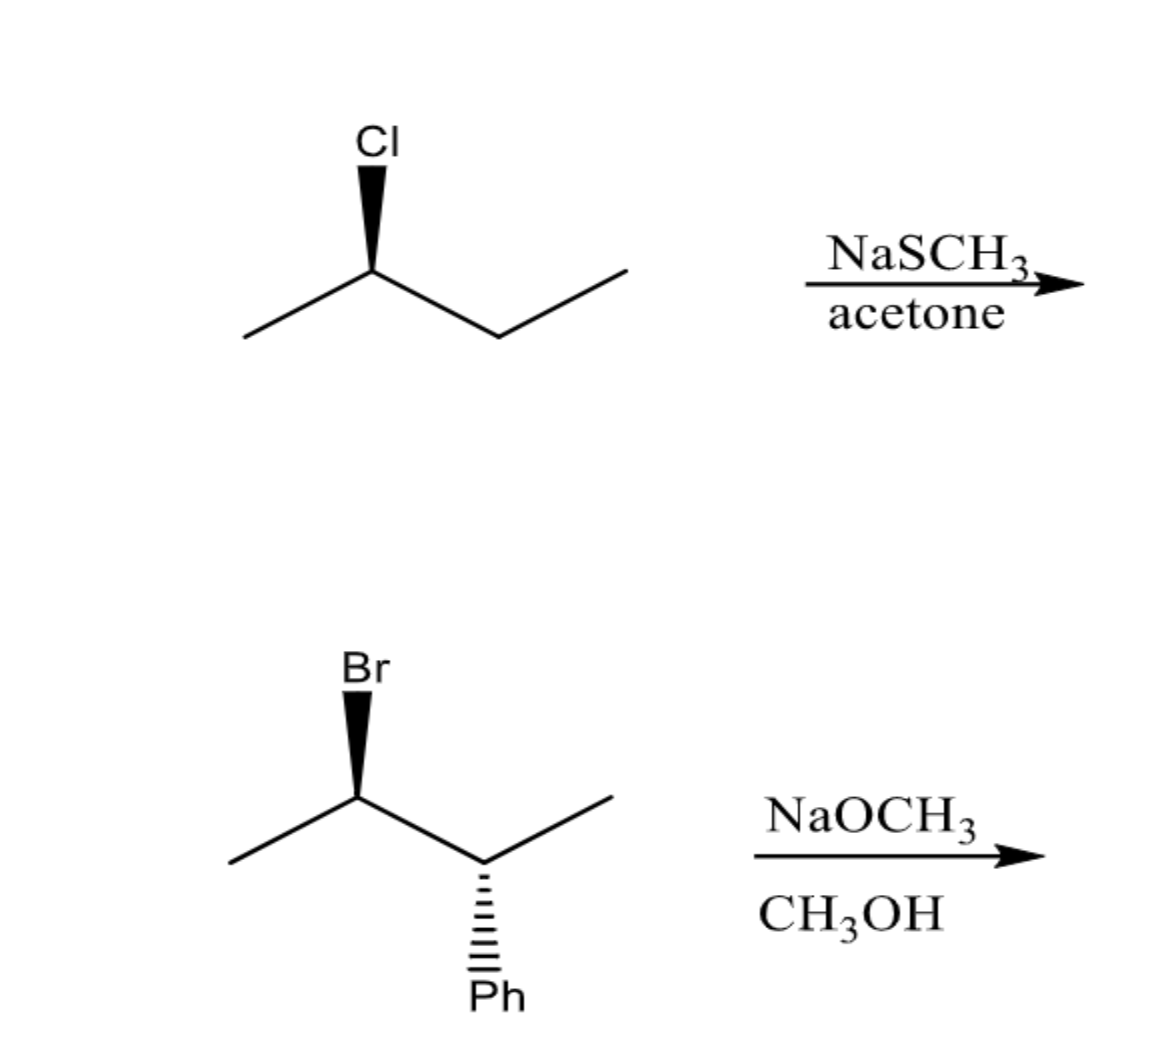 CI
Br
|||
Ph
NaSCH3
acetone
NaOCH 3
CH3OH